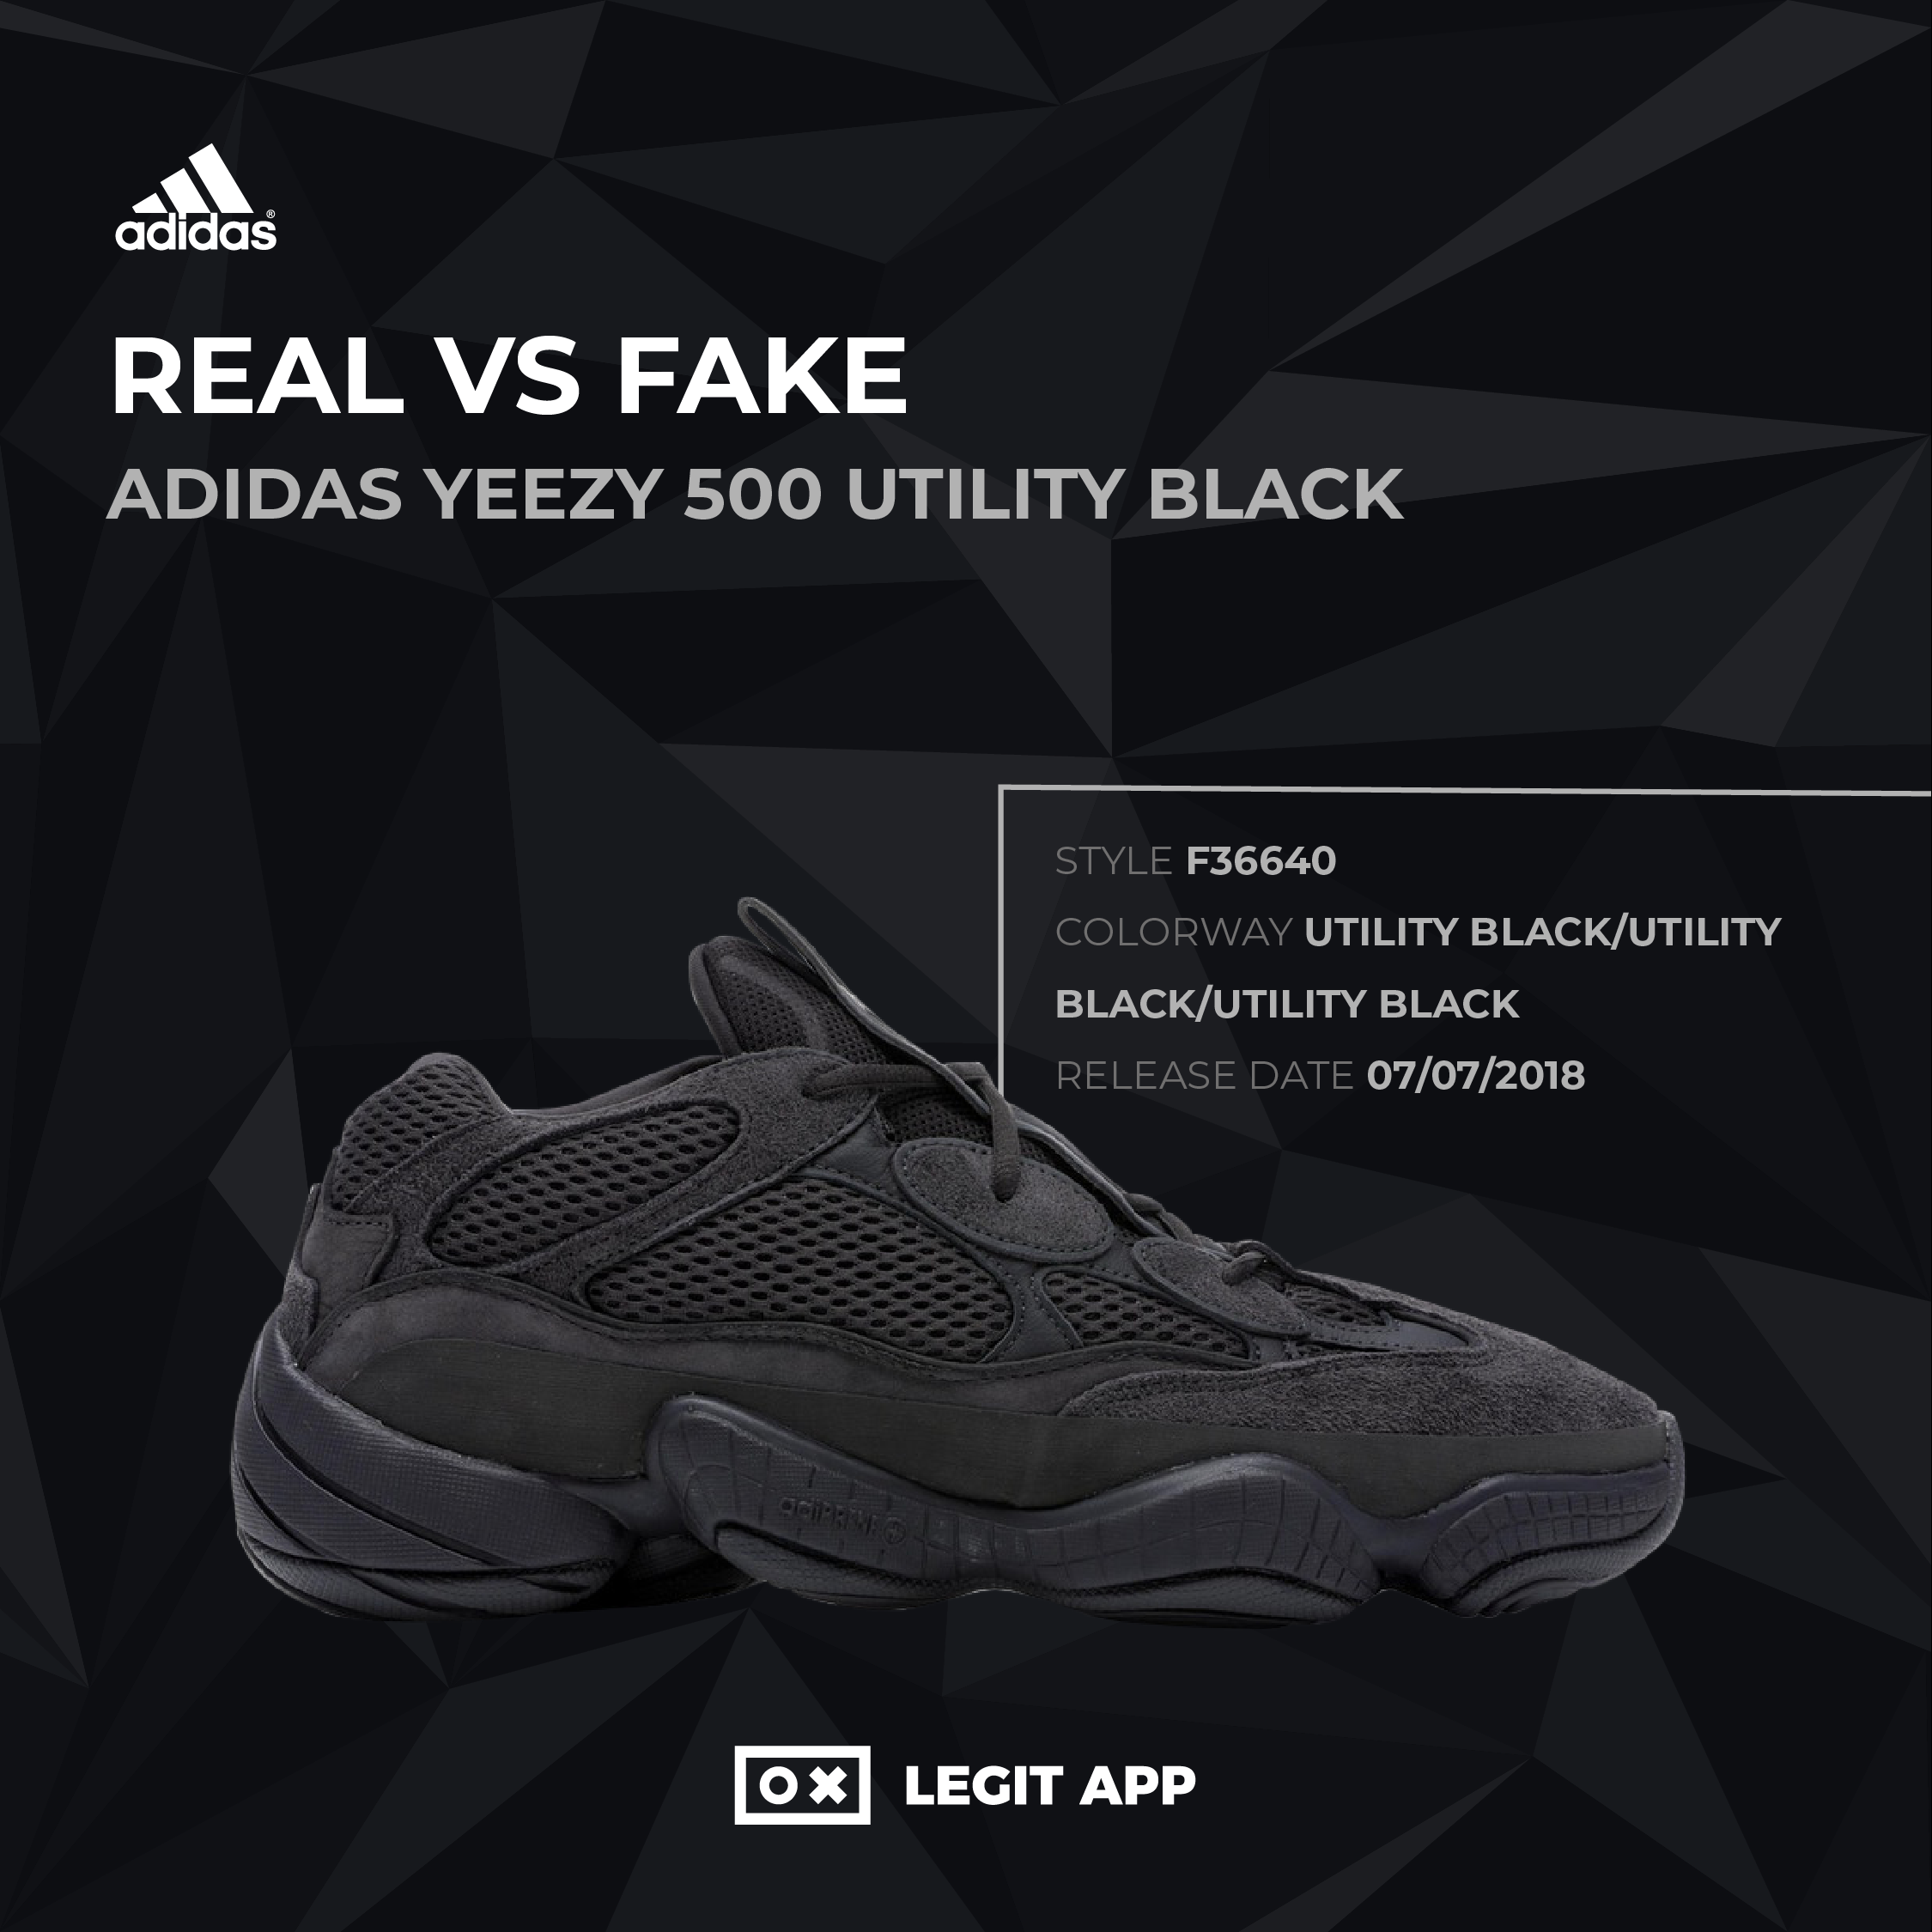 dos barro carbón REAL VS REPLICA - adidas Yeezy 500 Utility Black | LEGIT APP